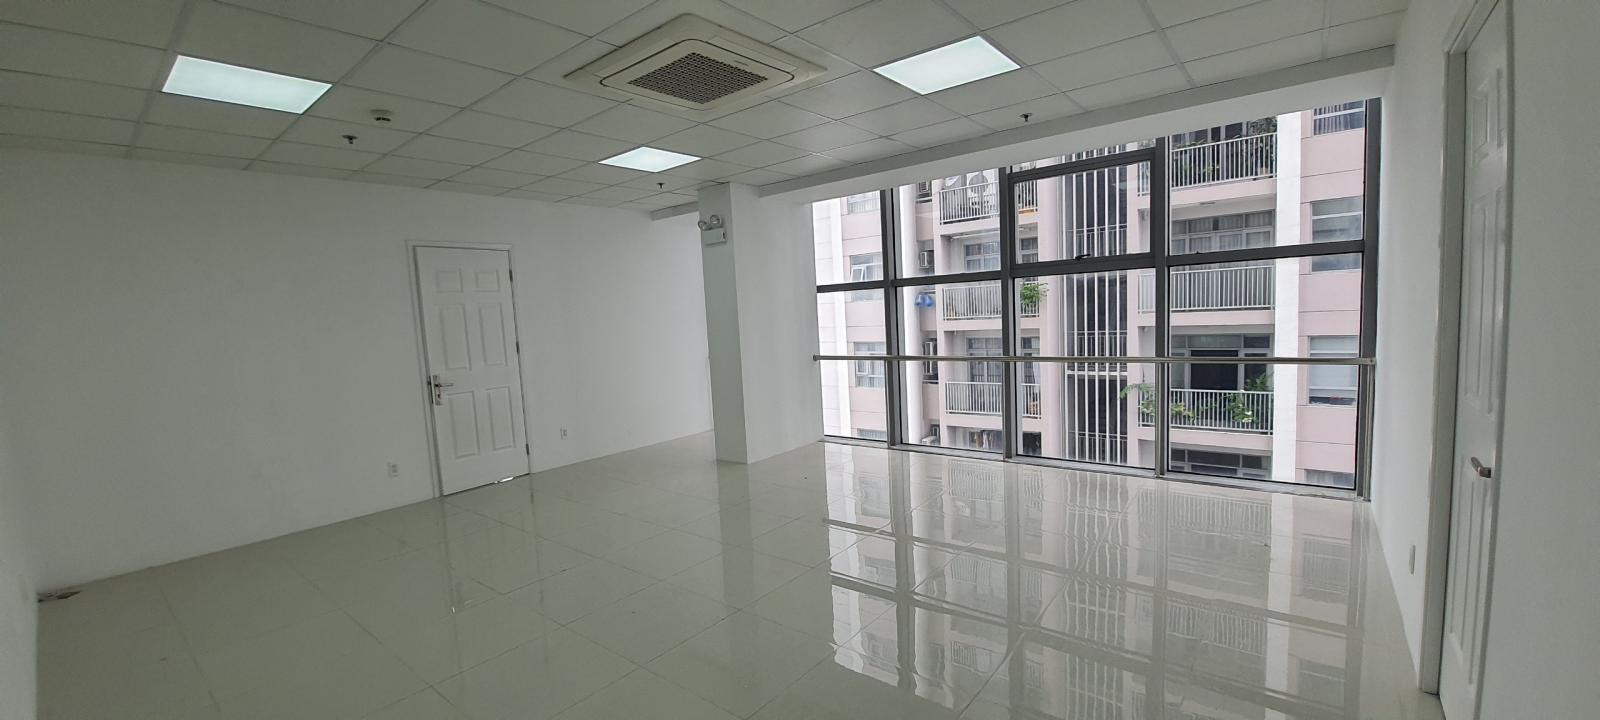 Văn phòng cho thuê Luxcity đường Huỳnh Tấn Phát Q7 nhiều diện tích .0909448284 Hiền 